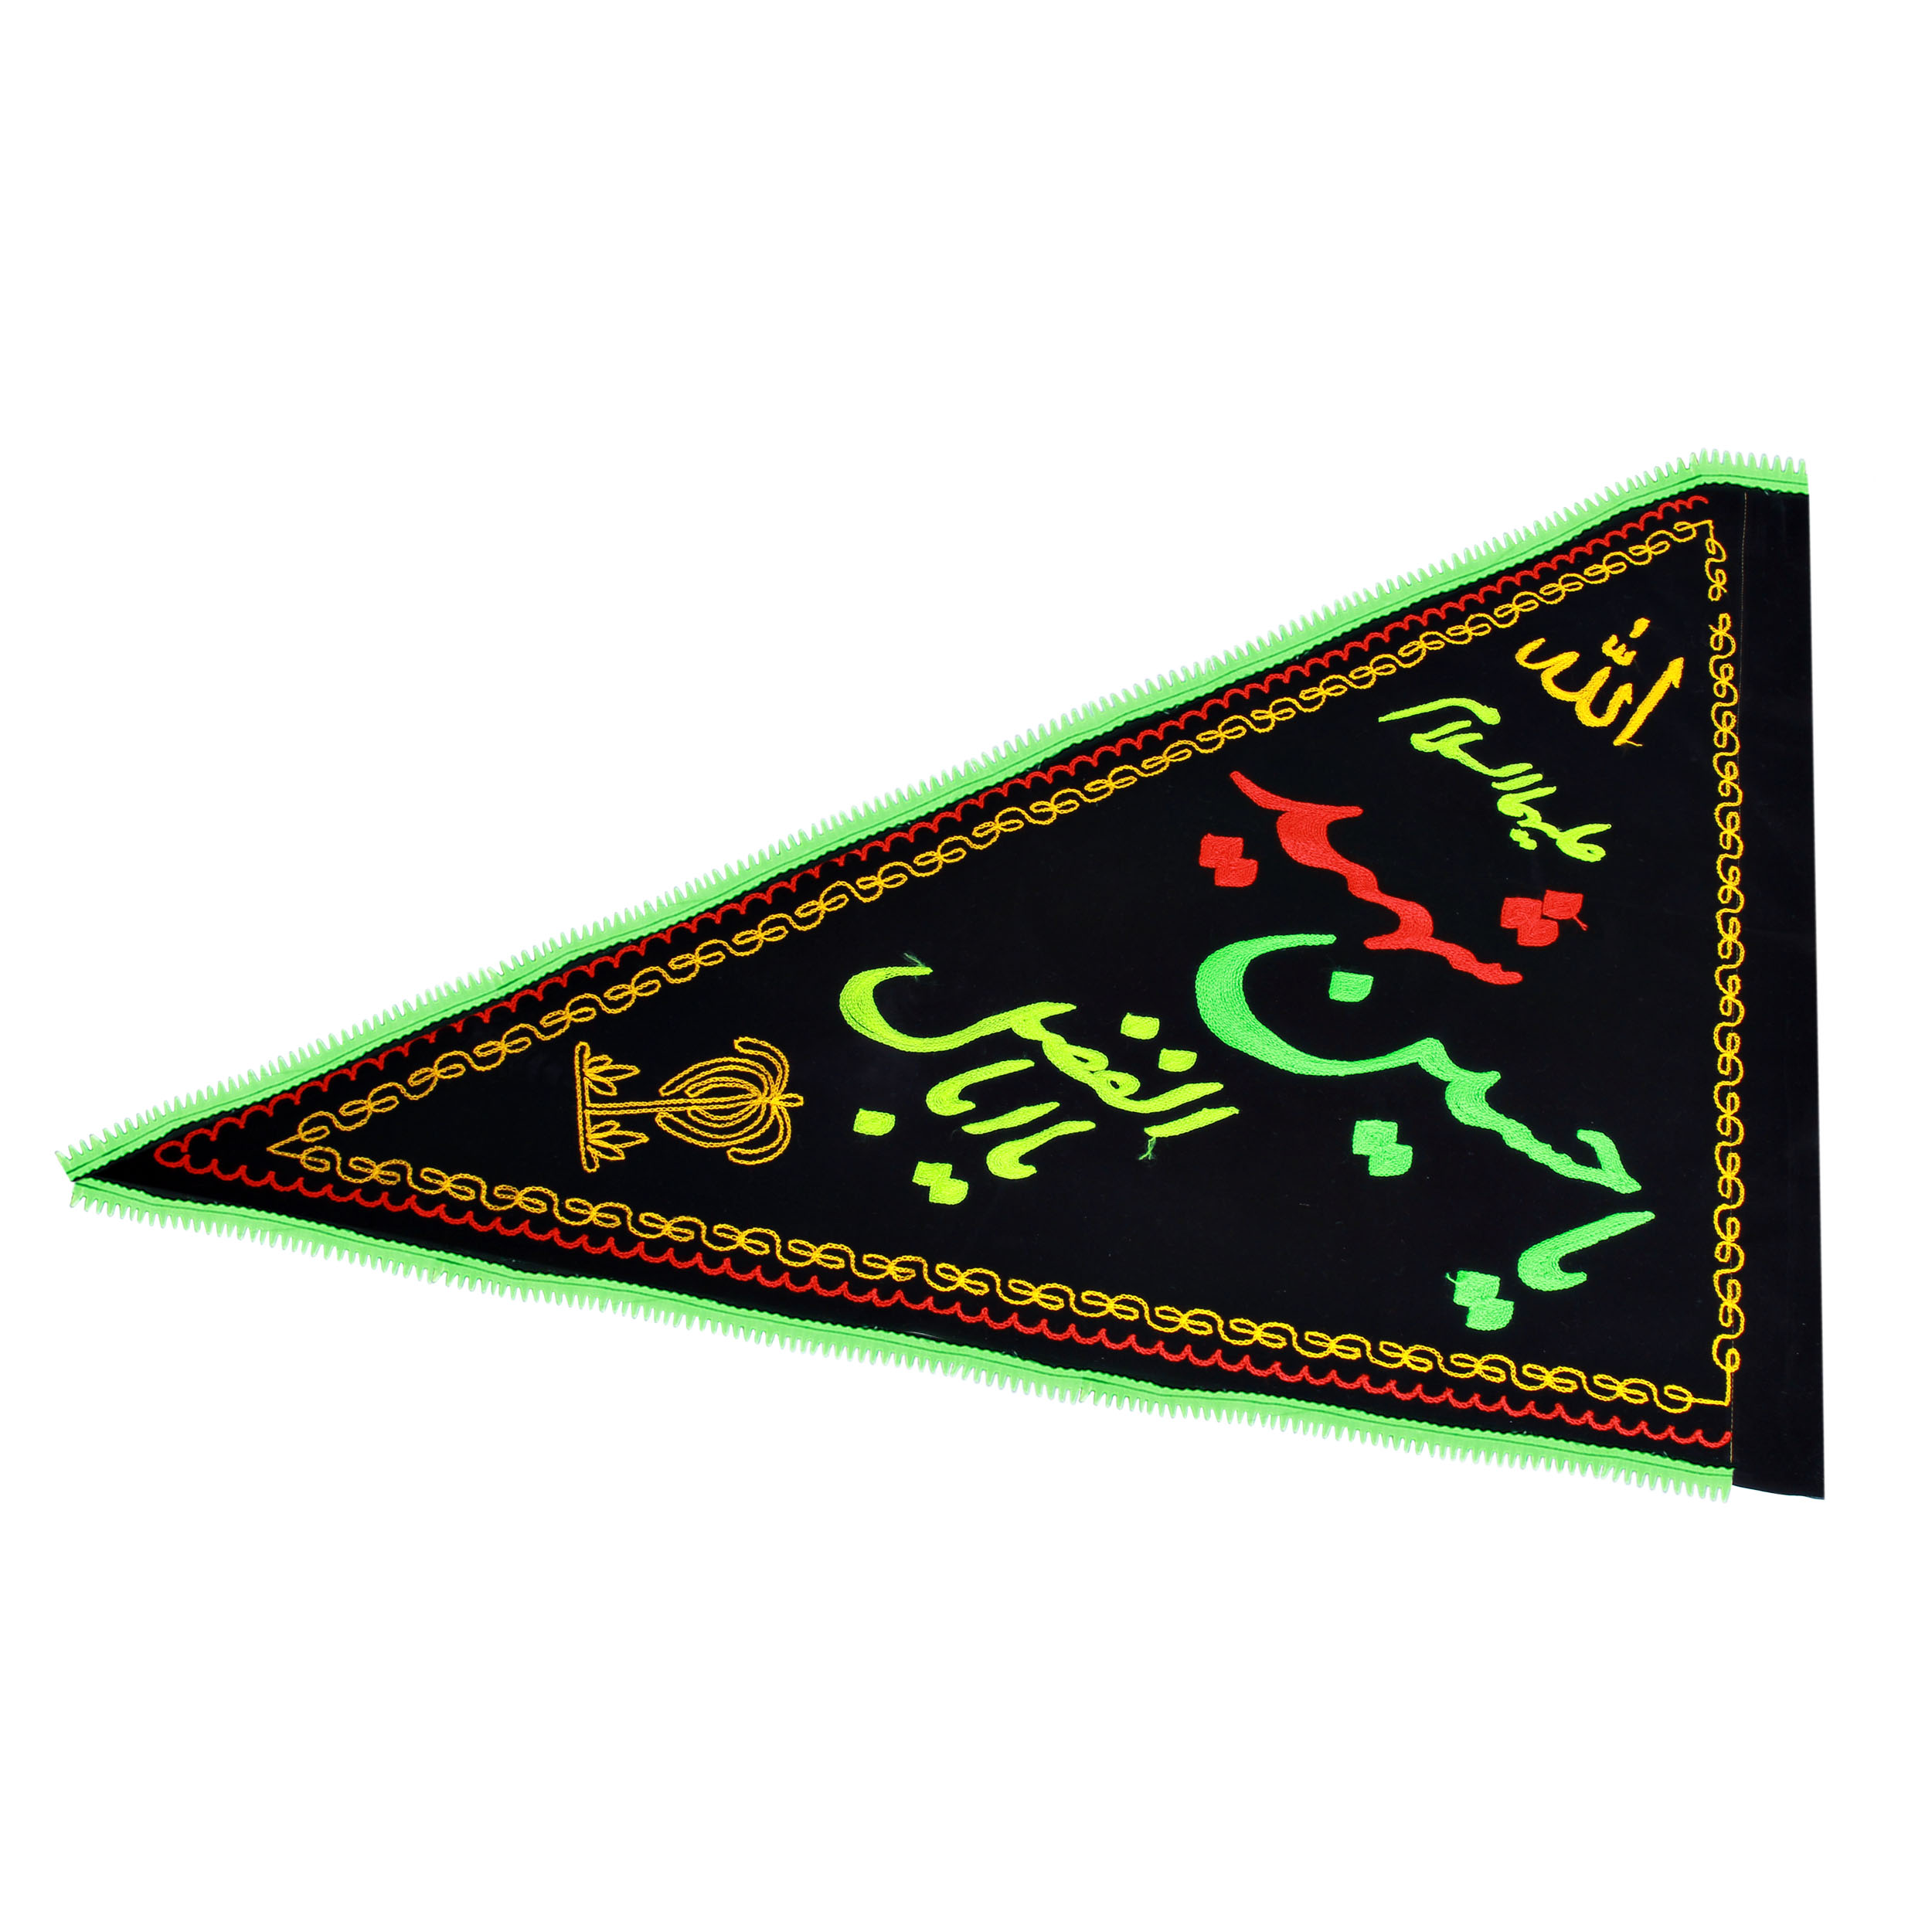 پرچم  بازرگانی میلادی طرح مذهبی یا حسین شهید علیه السلام کدPAR-085